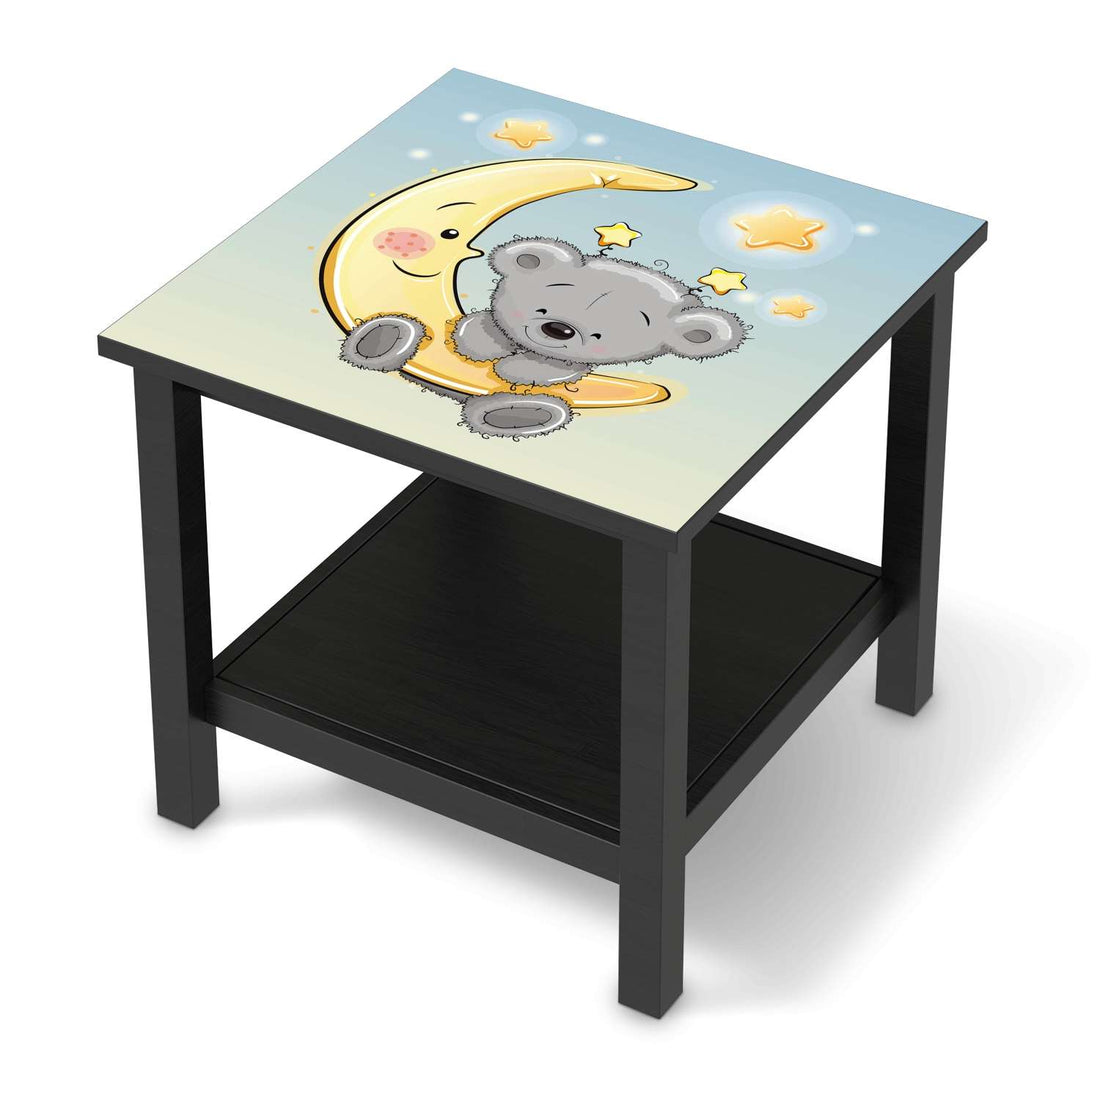 Möbel Klebefolie Teddy und Mond - IKEA Hemnes Beistelltisch 55x55 cm - schwarz